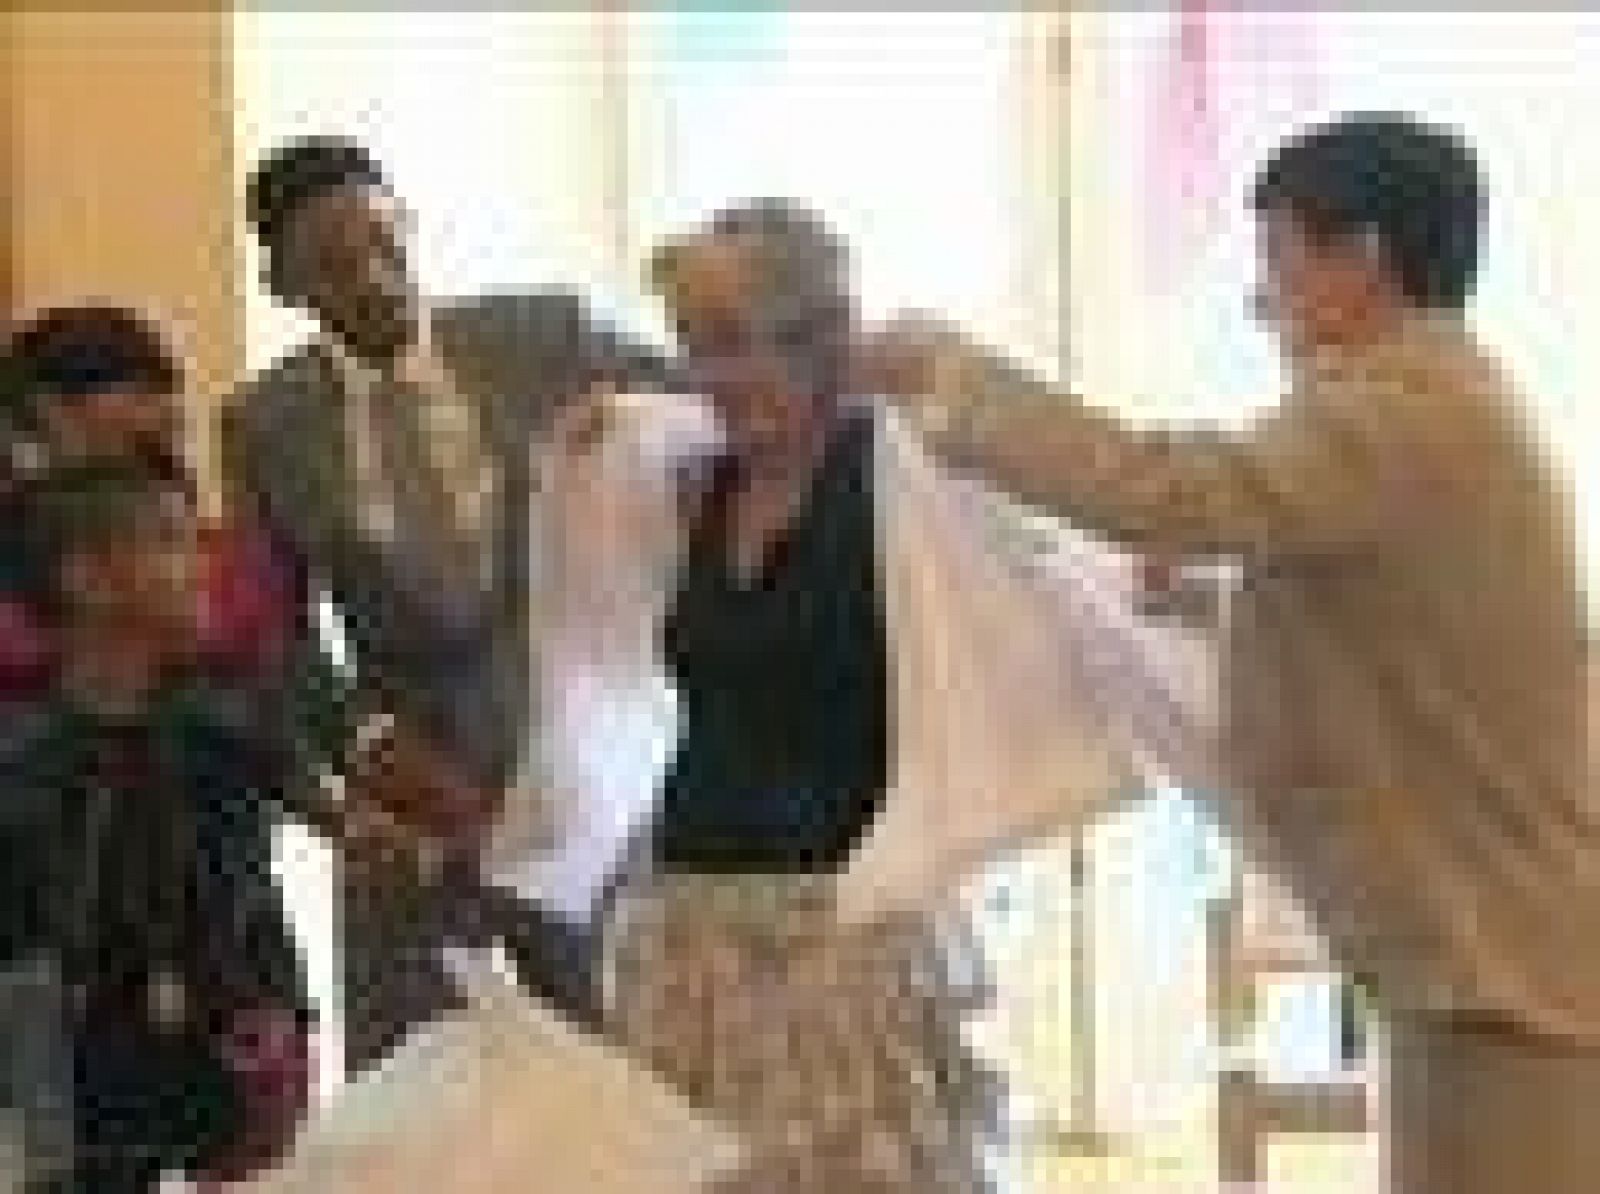 La presidenta de la Comunidad de Madrid, Esperanza Aguirre, recibió con honores a los actores Will Smith y Jacky Chang, quienes se han implicado en un proyecto de aulas hospitalarias. Aguirre les regaló dos capotes de torear con sus nombres y los actores le agasajaron con un kimono de kárate. (21/07/10)